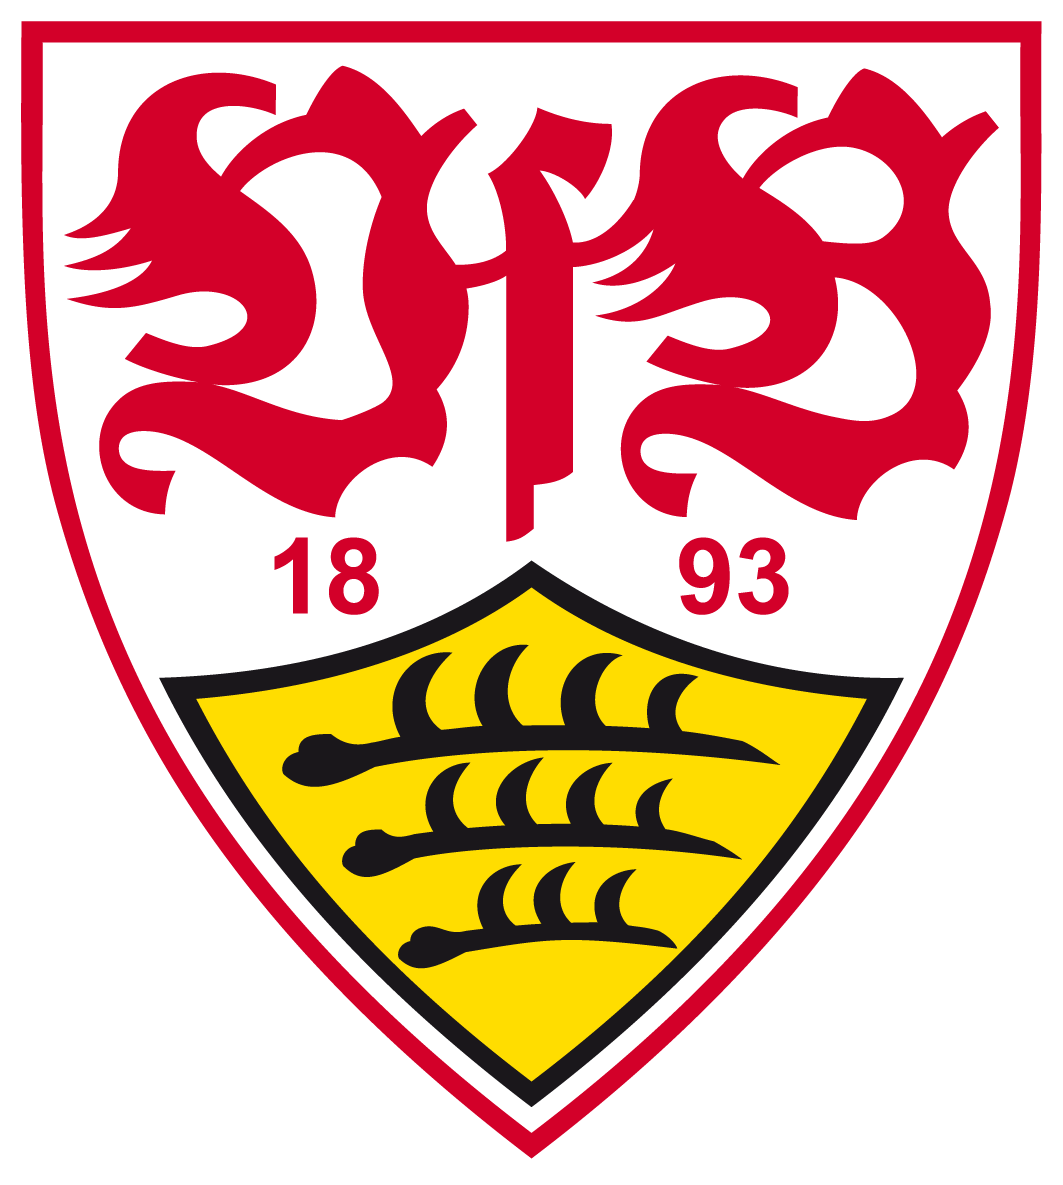 VfB